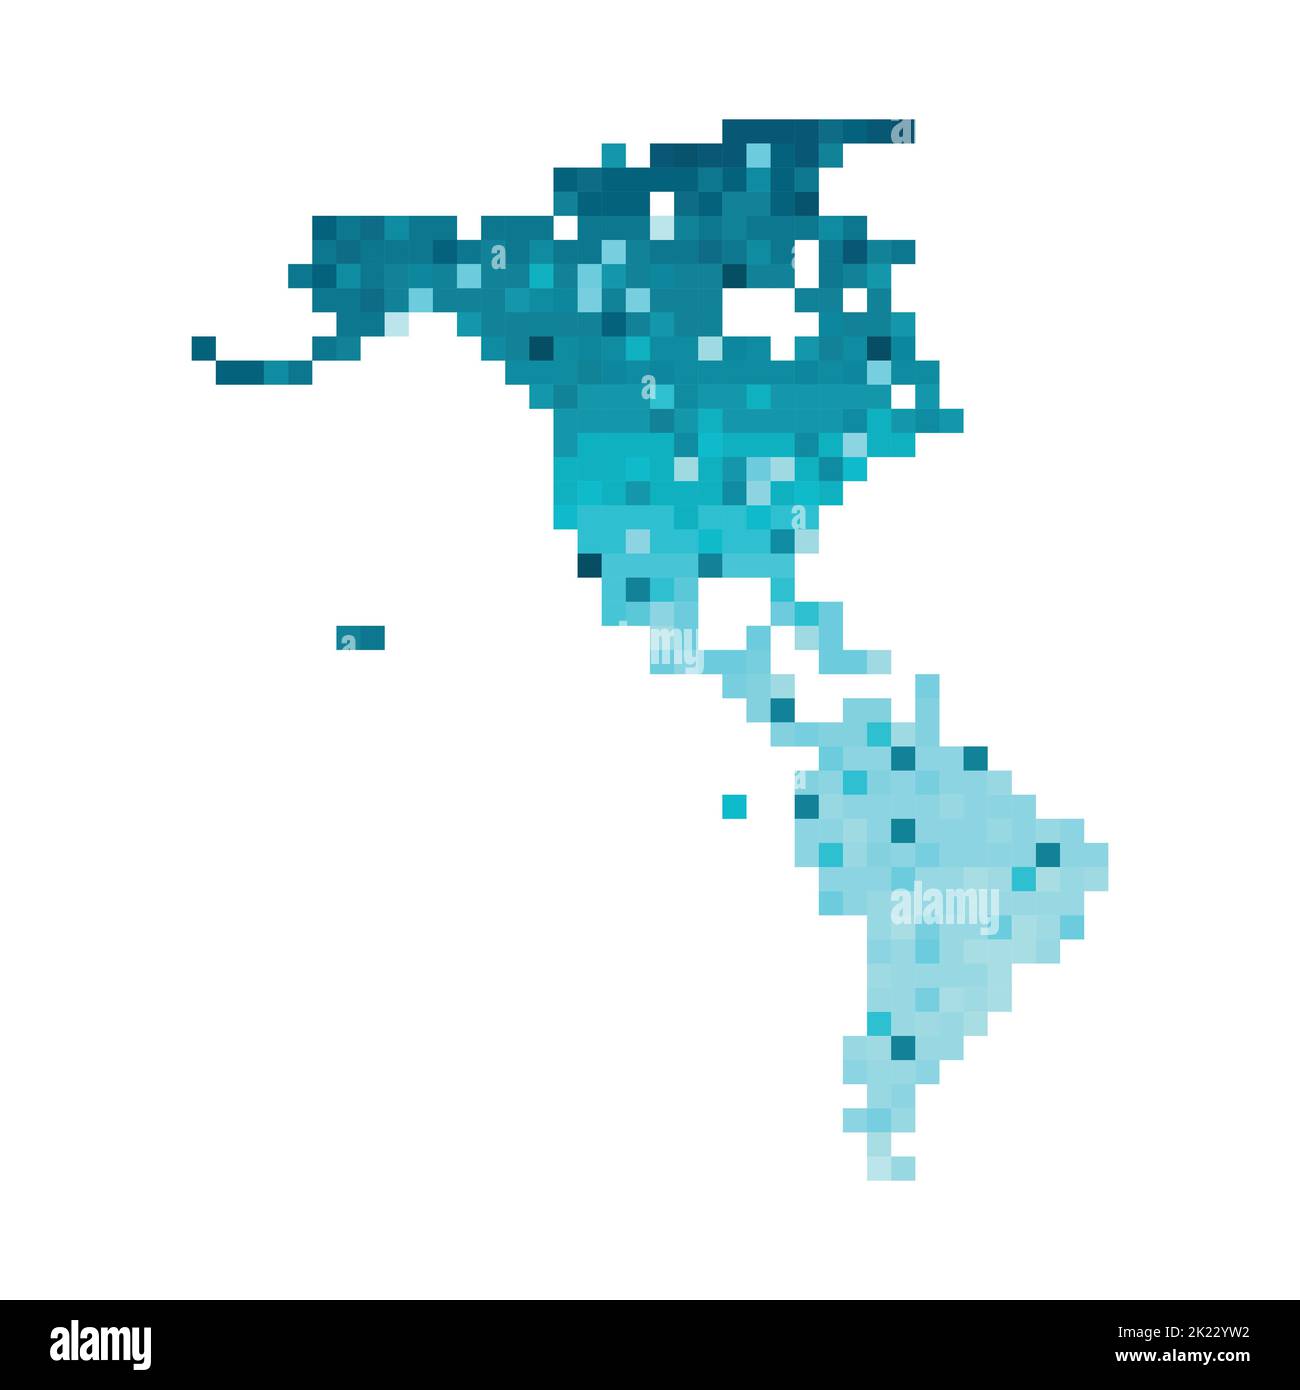 Illustrazione geometrica con isolamento vettoriale con sagoma blu ghiaccio semplificata della mappa del Nord e del Sud America (continente). Stile pixel art per il templat NFT Illustrazione Vettoriale